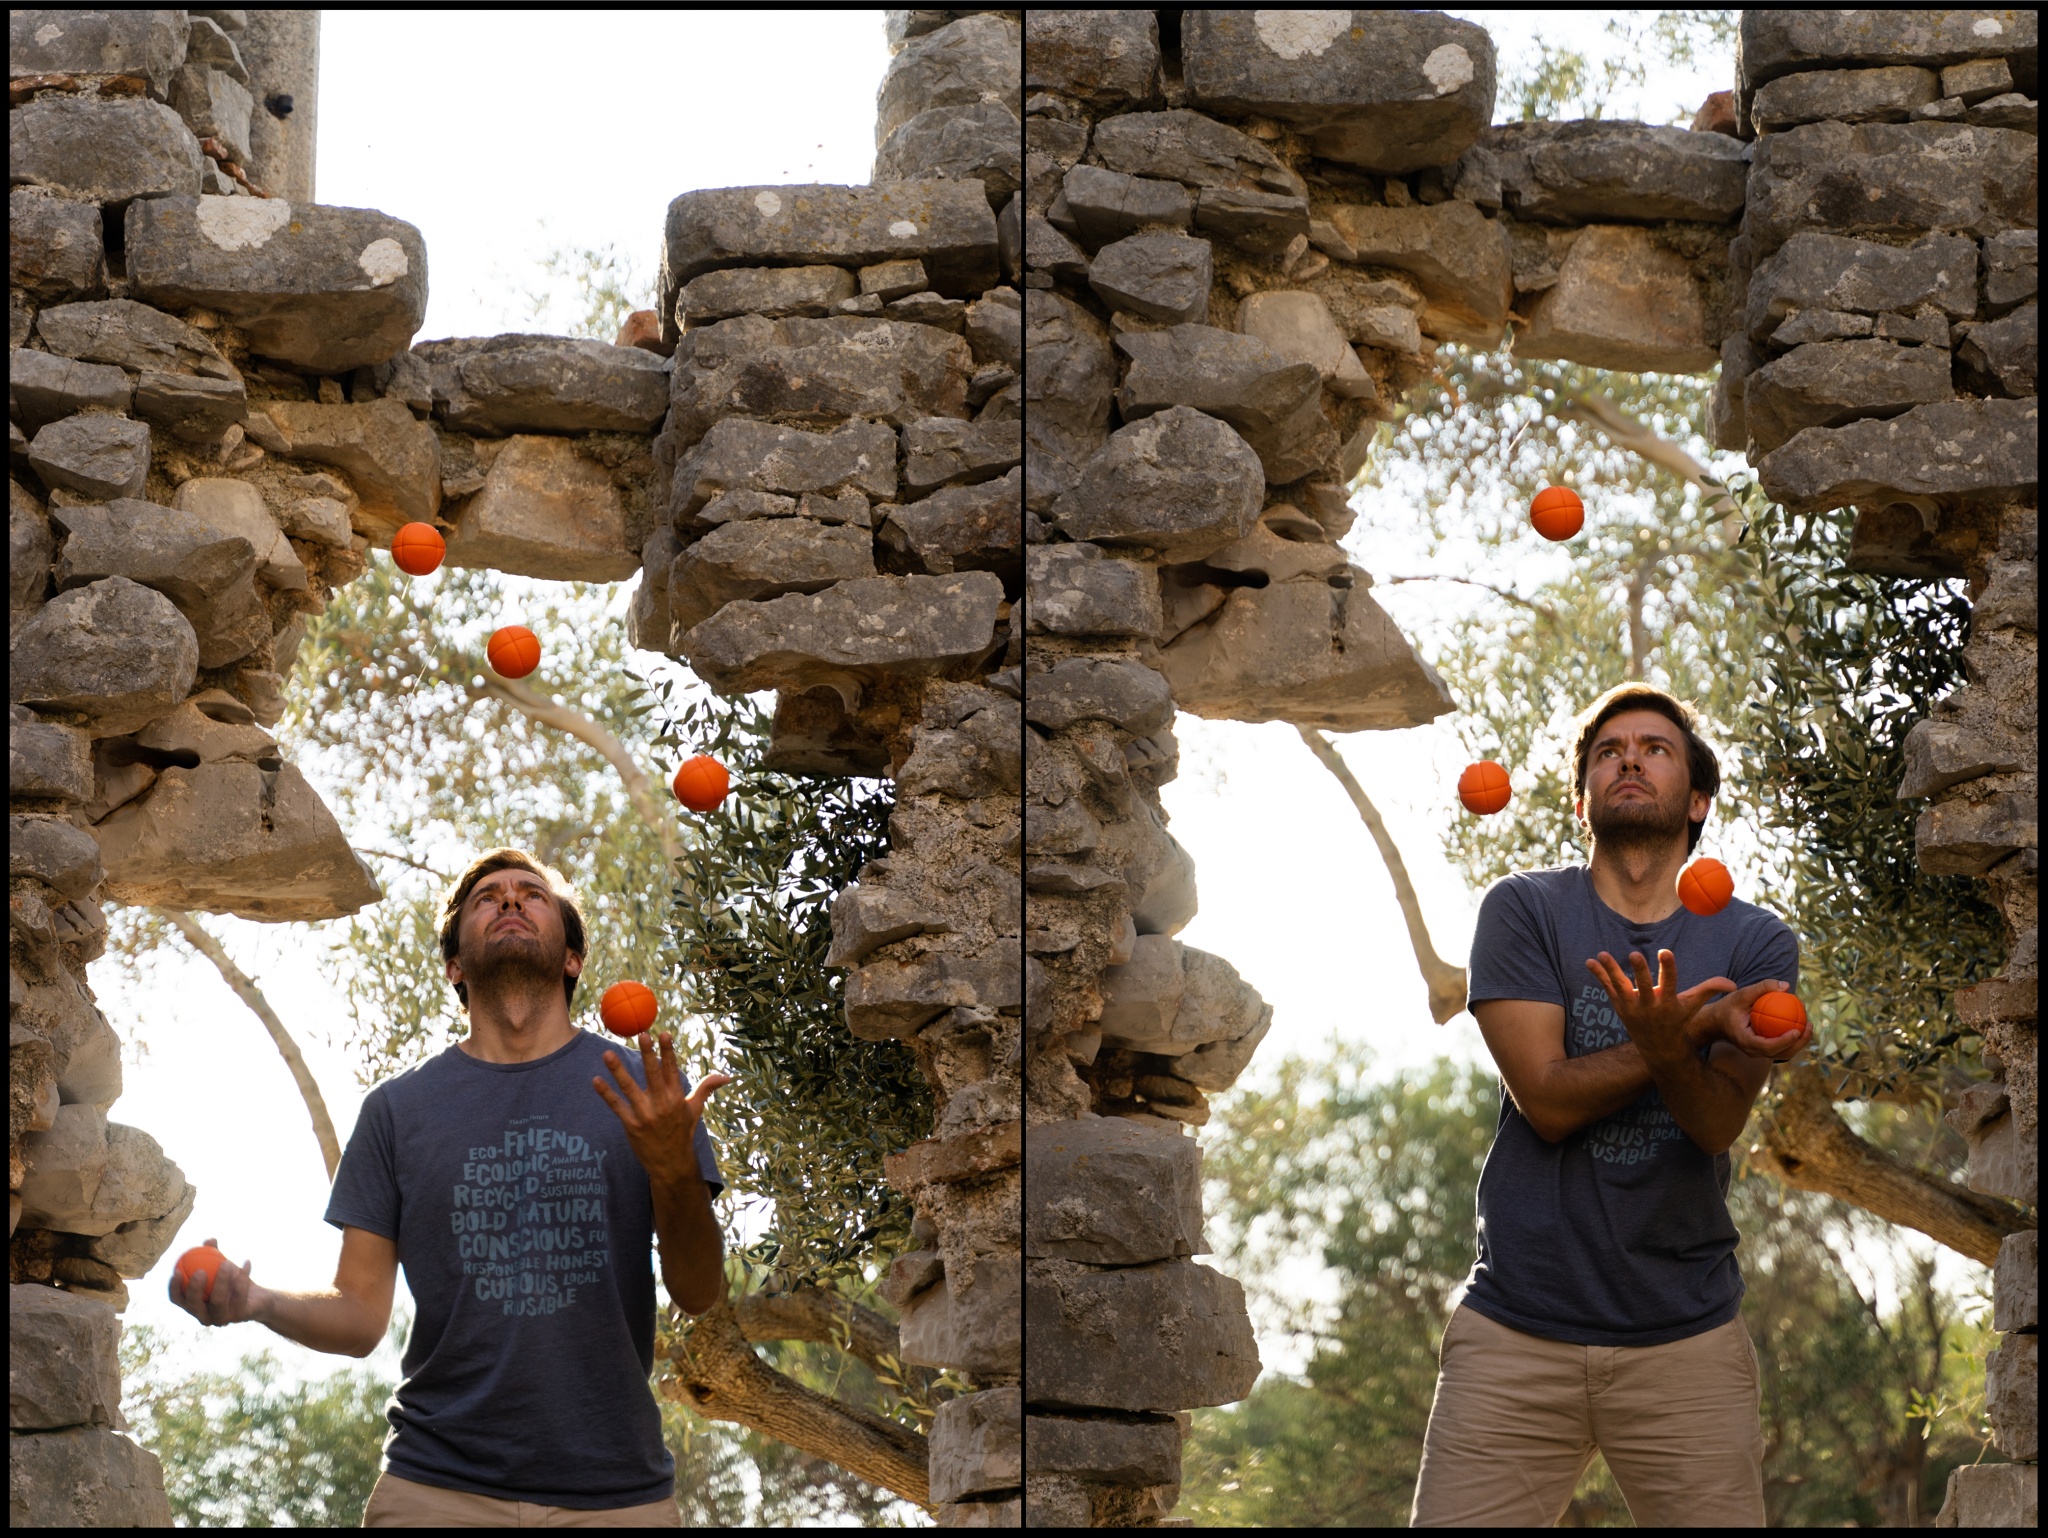 Portrét v pohybu: Žonglování s míčky